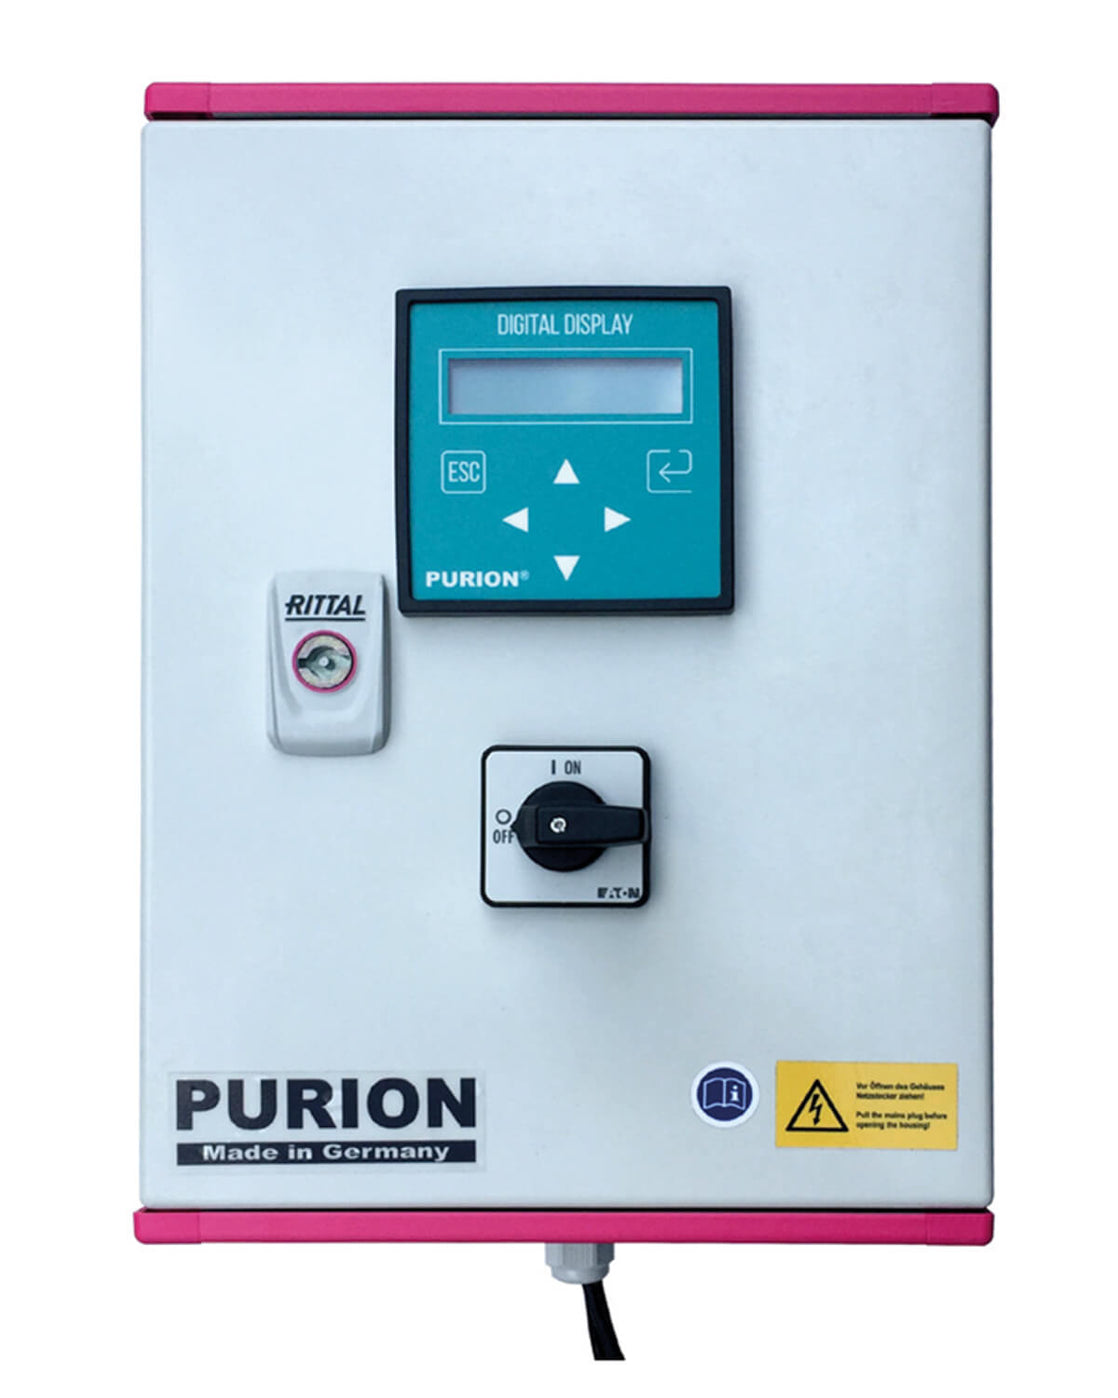 Die PURION GmbH ist ein zertifiziertes Unternehmen, das sich auf die PURION DVGW-Zertifizierung spezialisiert hat. Verwendung einer UVC-Anlage zur Desinfektion von Trinkwasser.